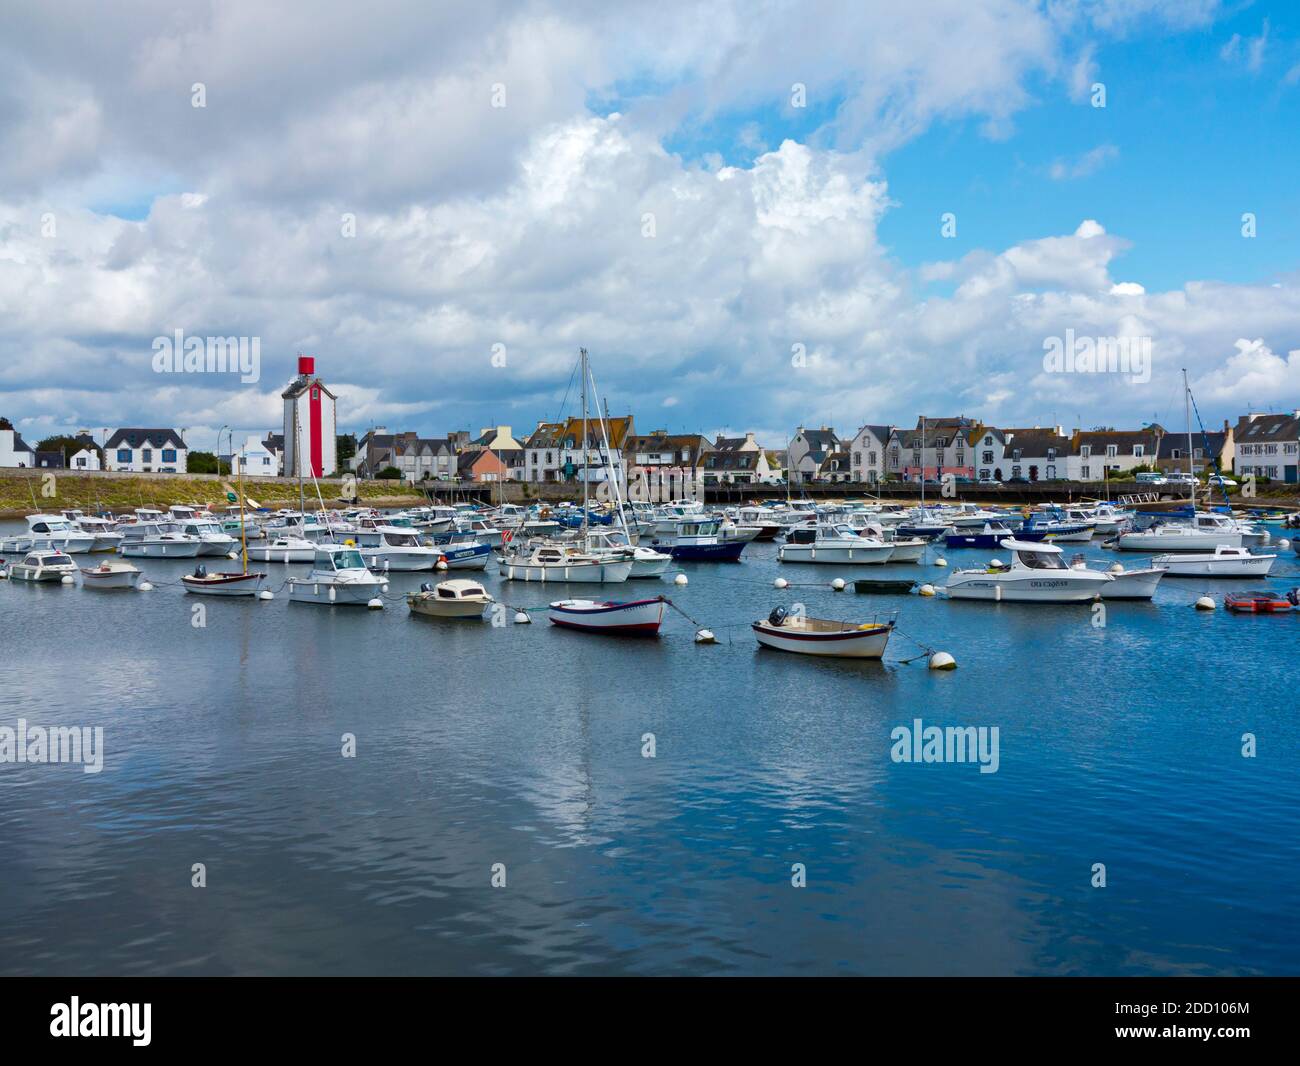 Ausflugsboote im Hafen von Guilvinec oder Le Guilvinec, einer Gemeinde im Département Finistère der Bretagne im Nordwesten Frankreichs. Stockfoto